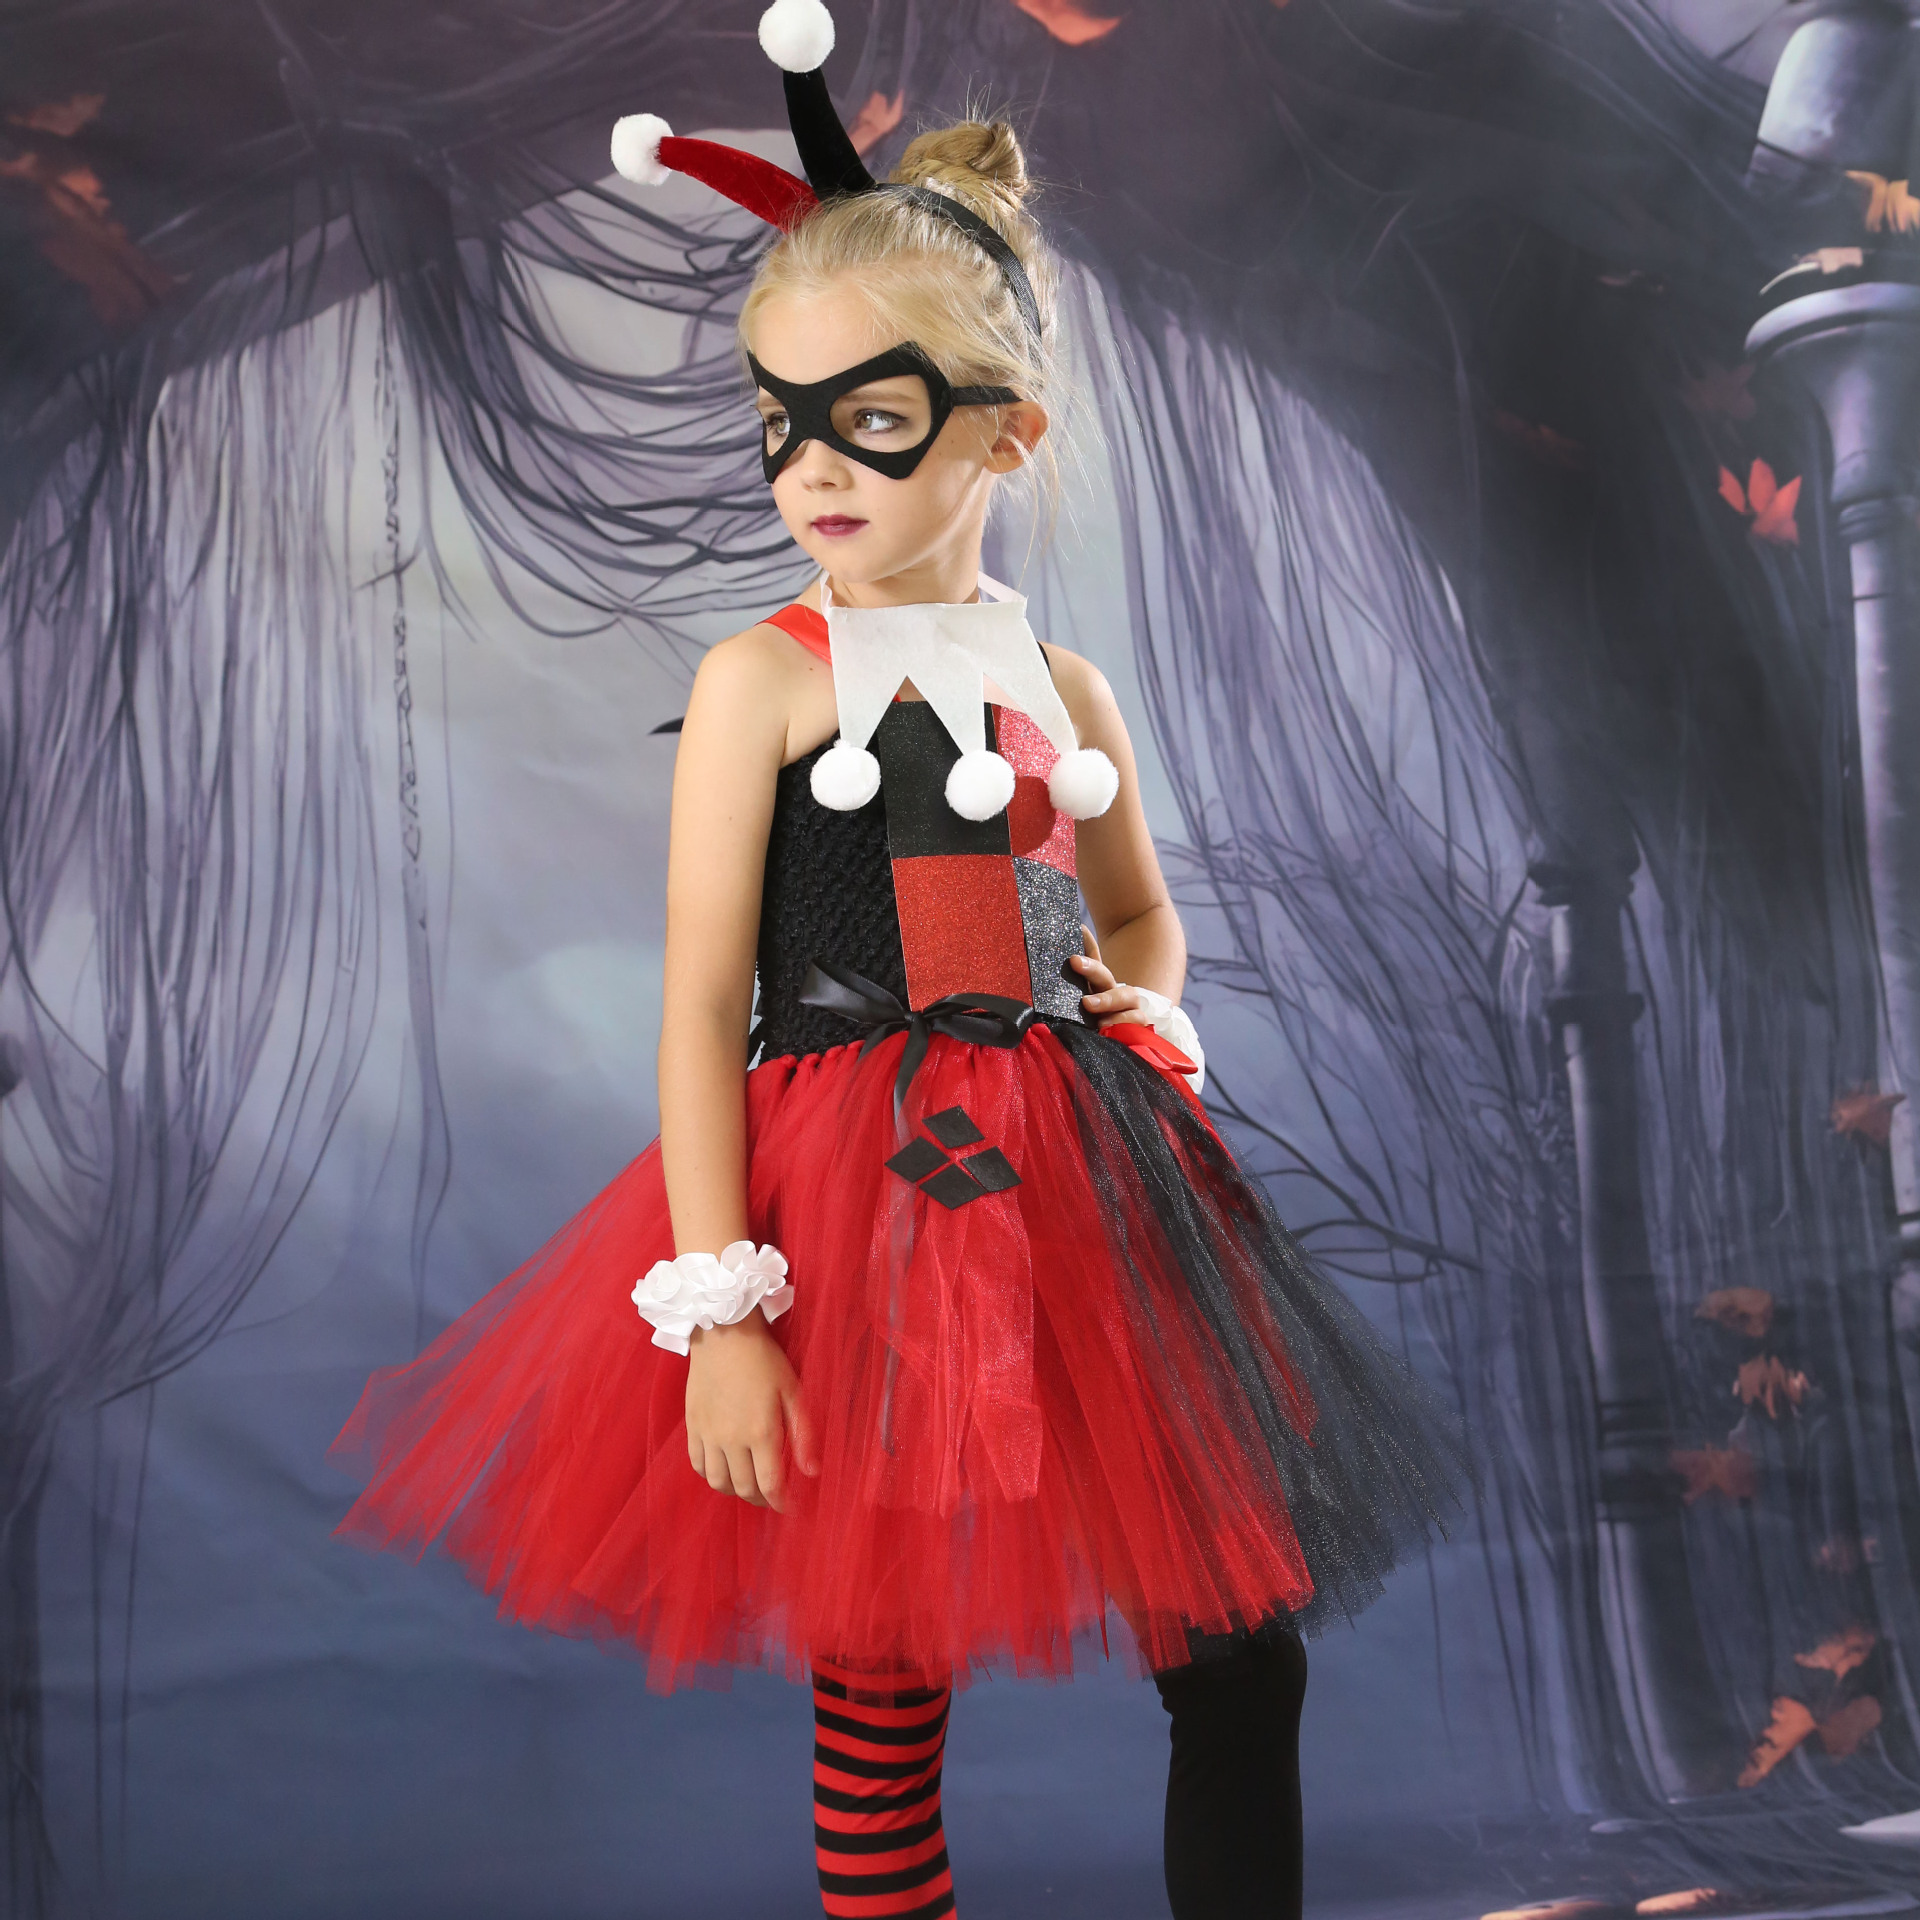 万圣节儿童服装欧美新款小丑女角色扮演儿童蓬蓬裙派对表演utu裙